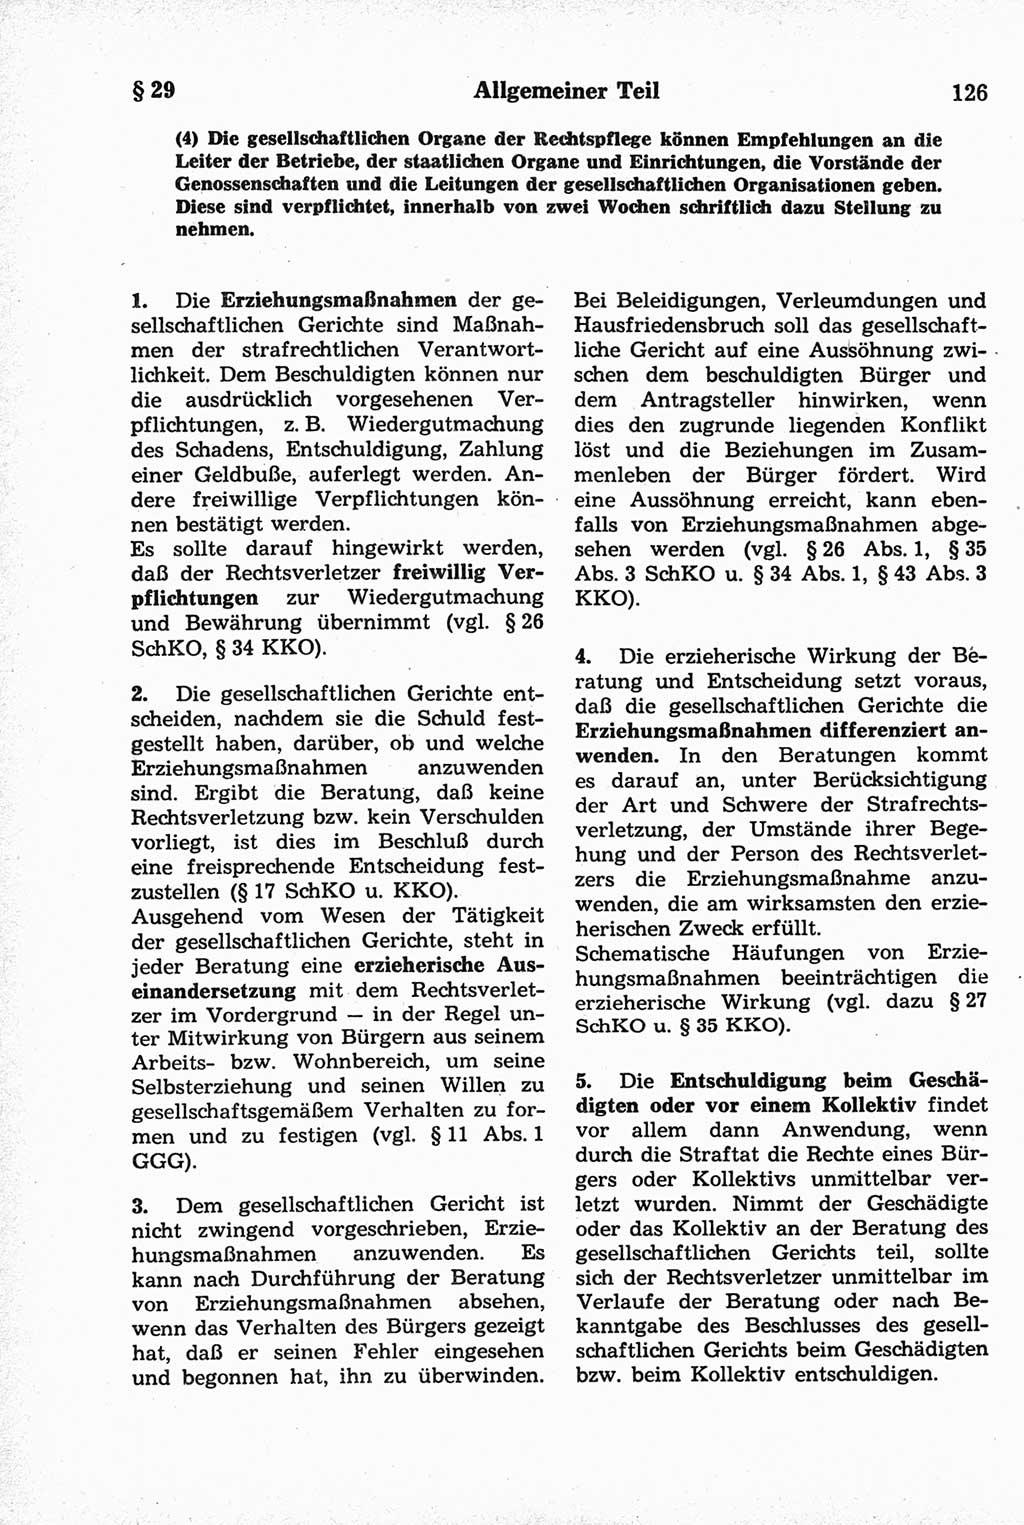 Strafrecht der Deutschen Demokratischen Republik (DDR), Kommentar zum Strafgesetzbuch (StGB) 1981, Seite 126 (Strafr. DDR Komm. StGB 1981, S. 126)